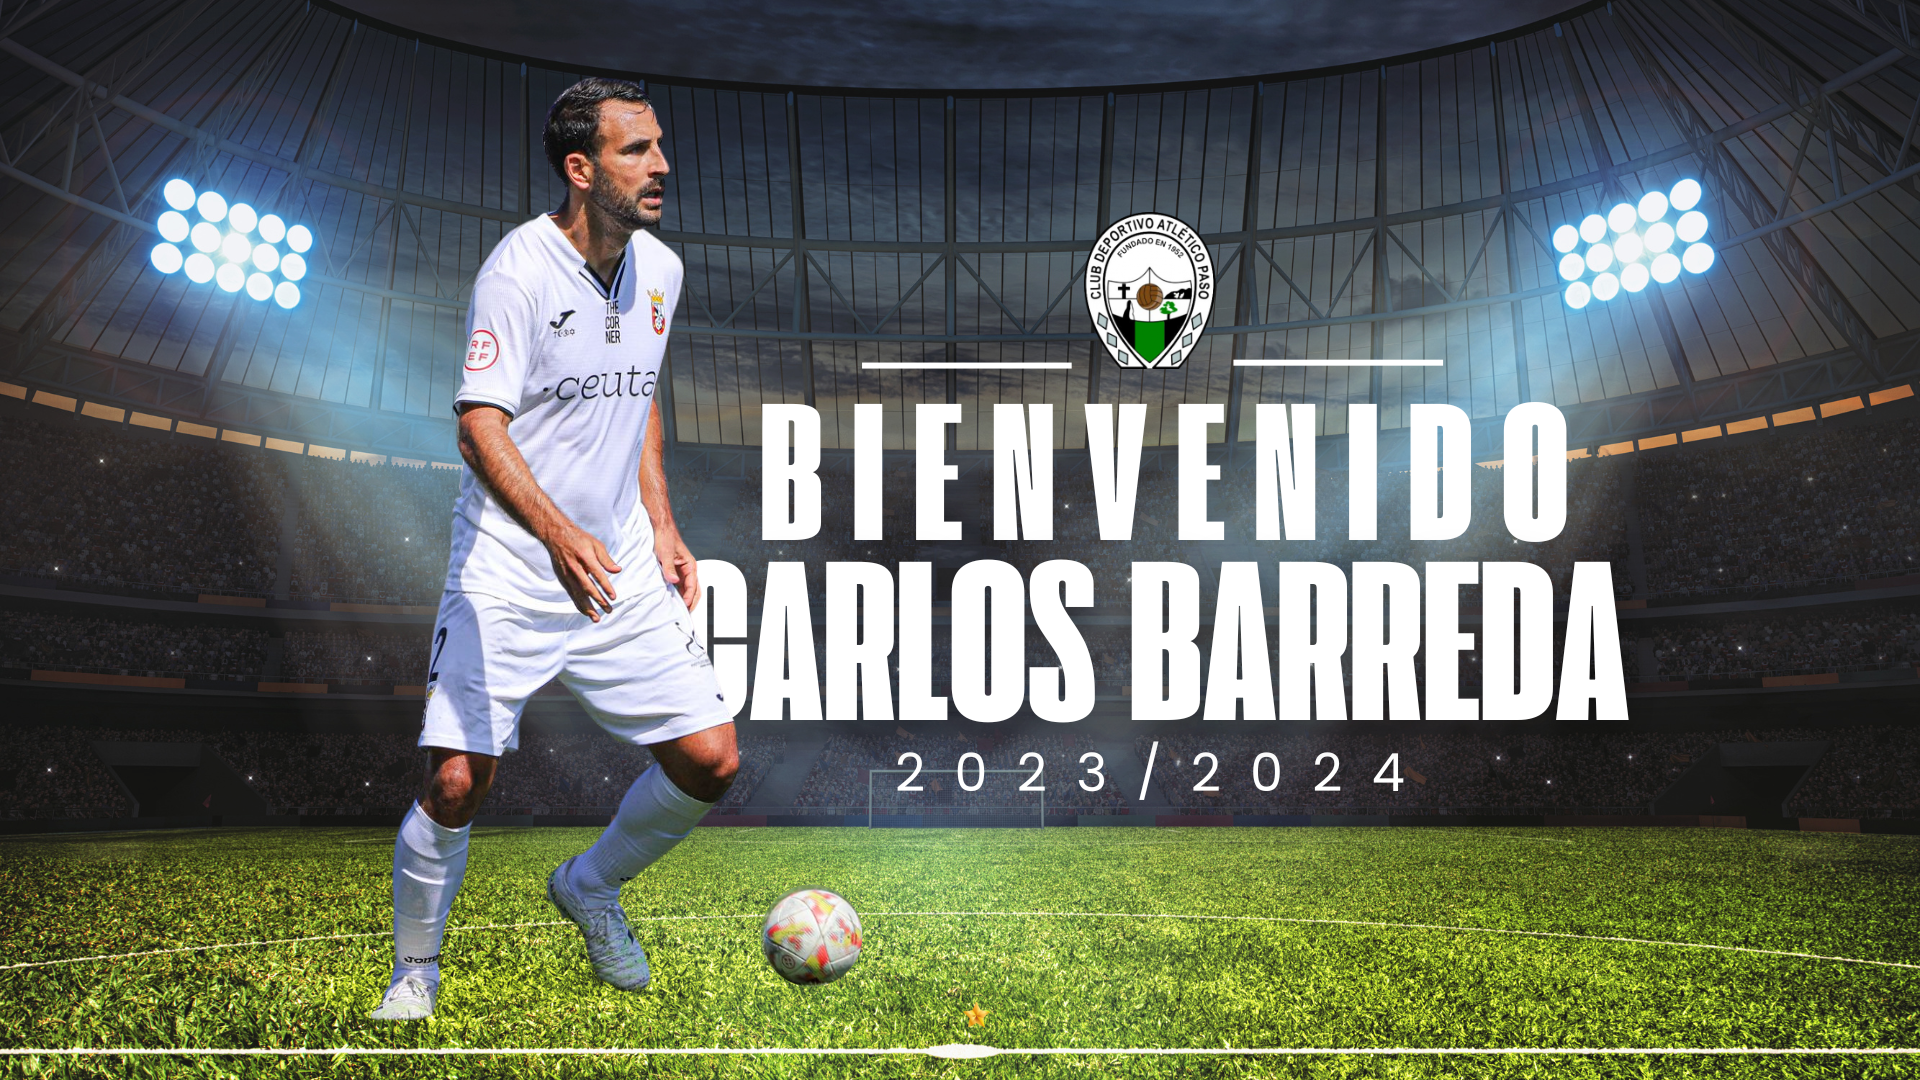 El lateral derecho binefarense Carlos Barreda se incorpora al Atlético Paso 23-24